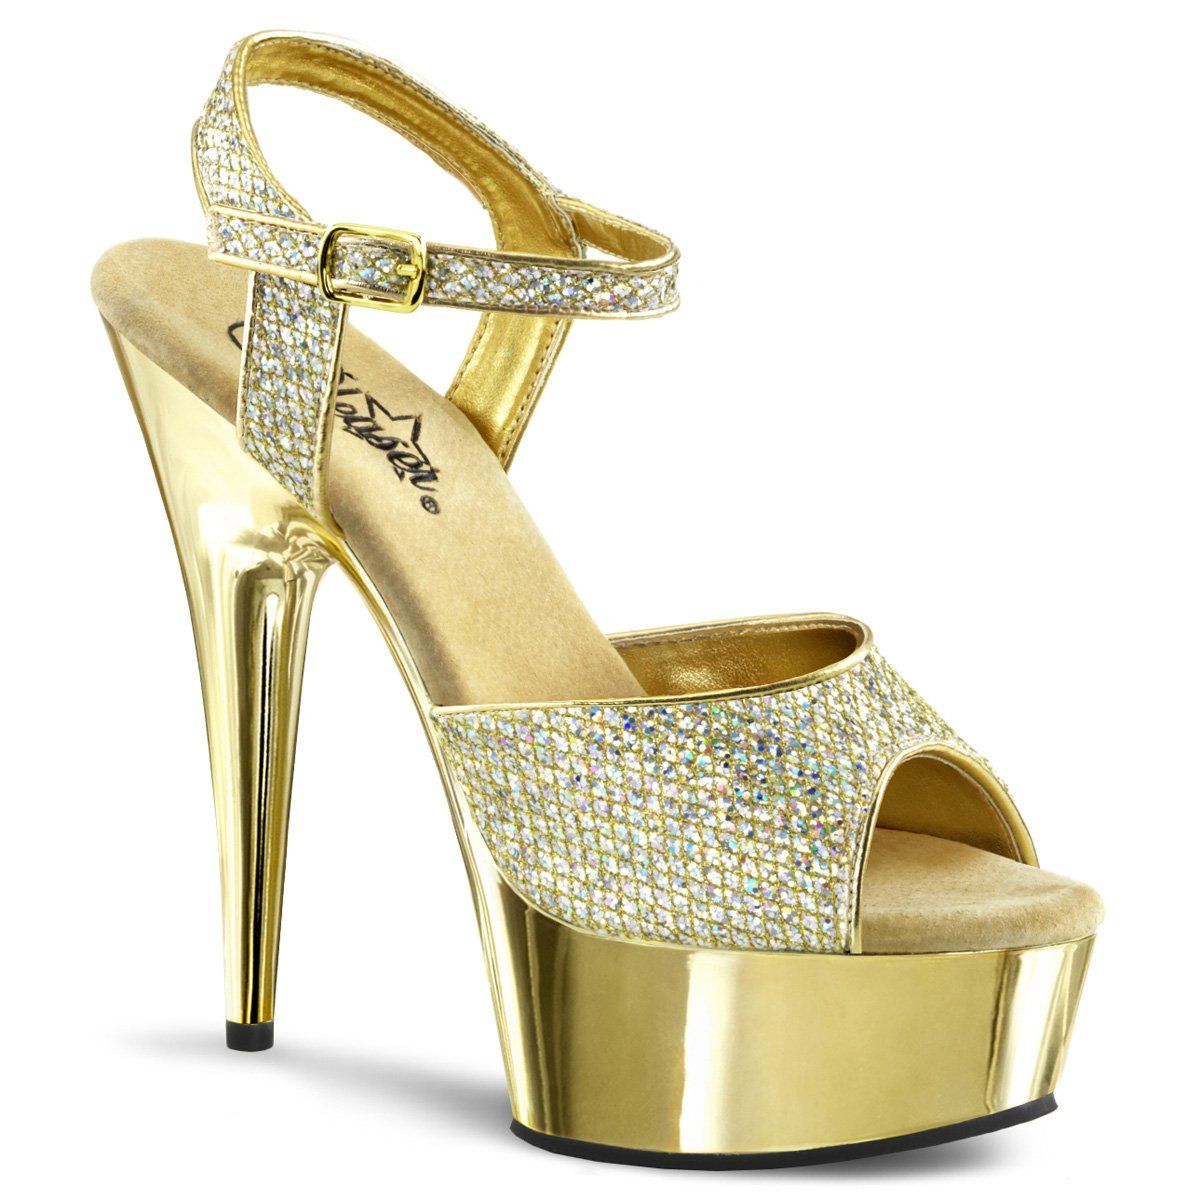 DELIGHT-609G Gold Multi Glitter/Gold Chrome Platform Sandal Pleaser